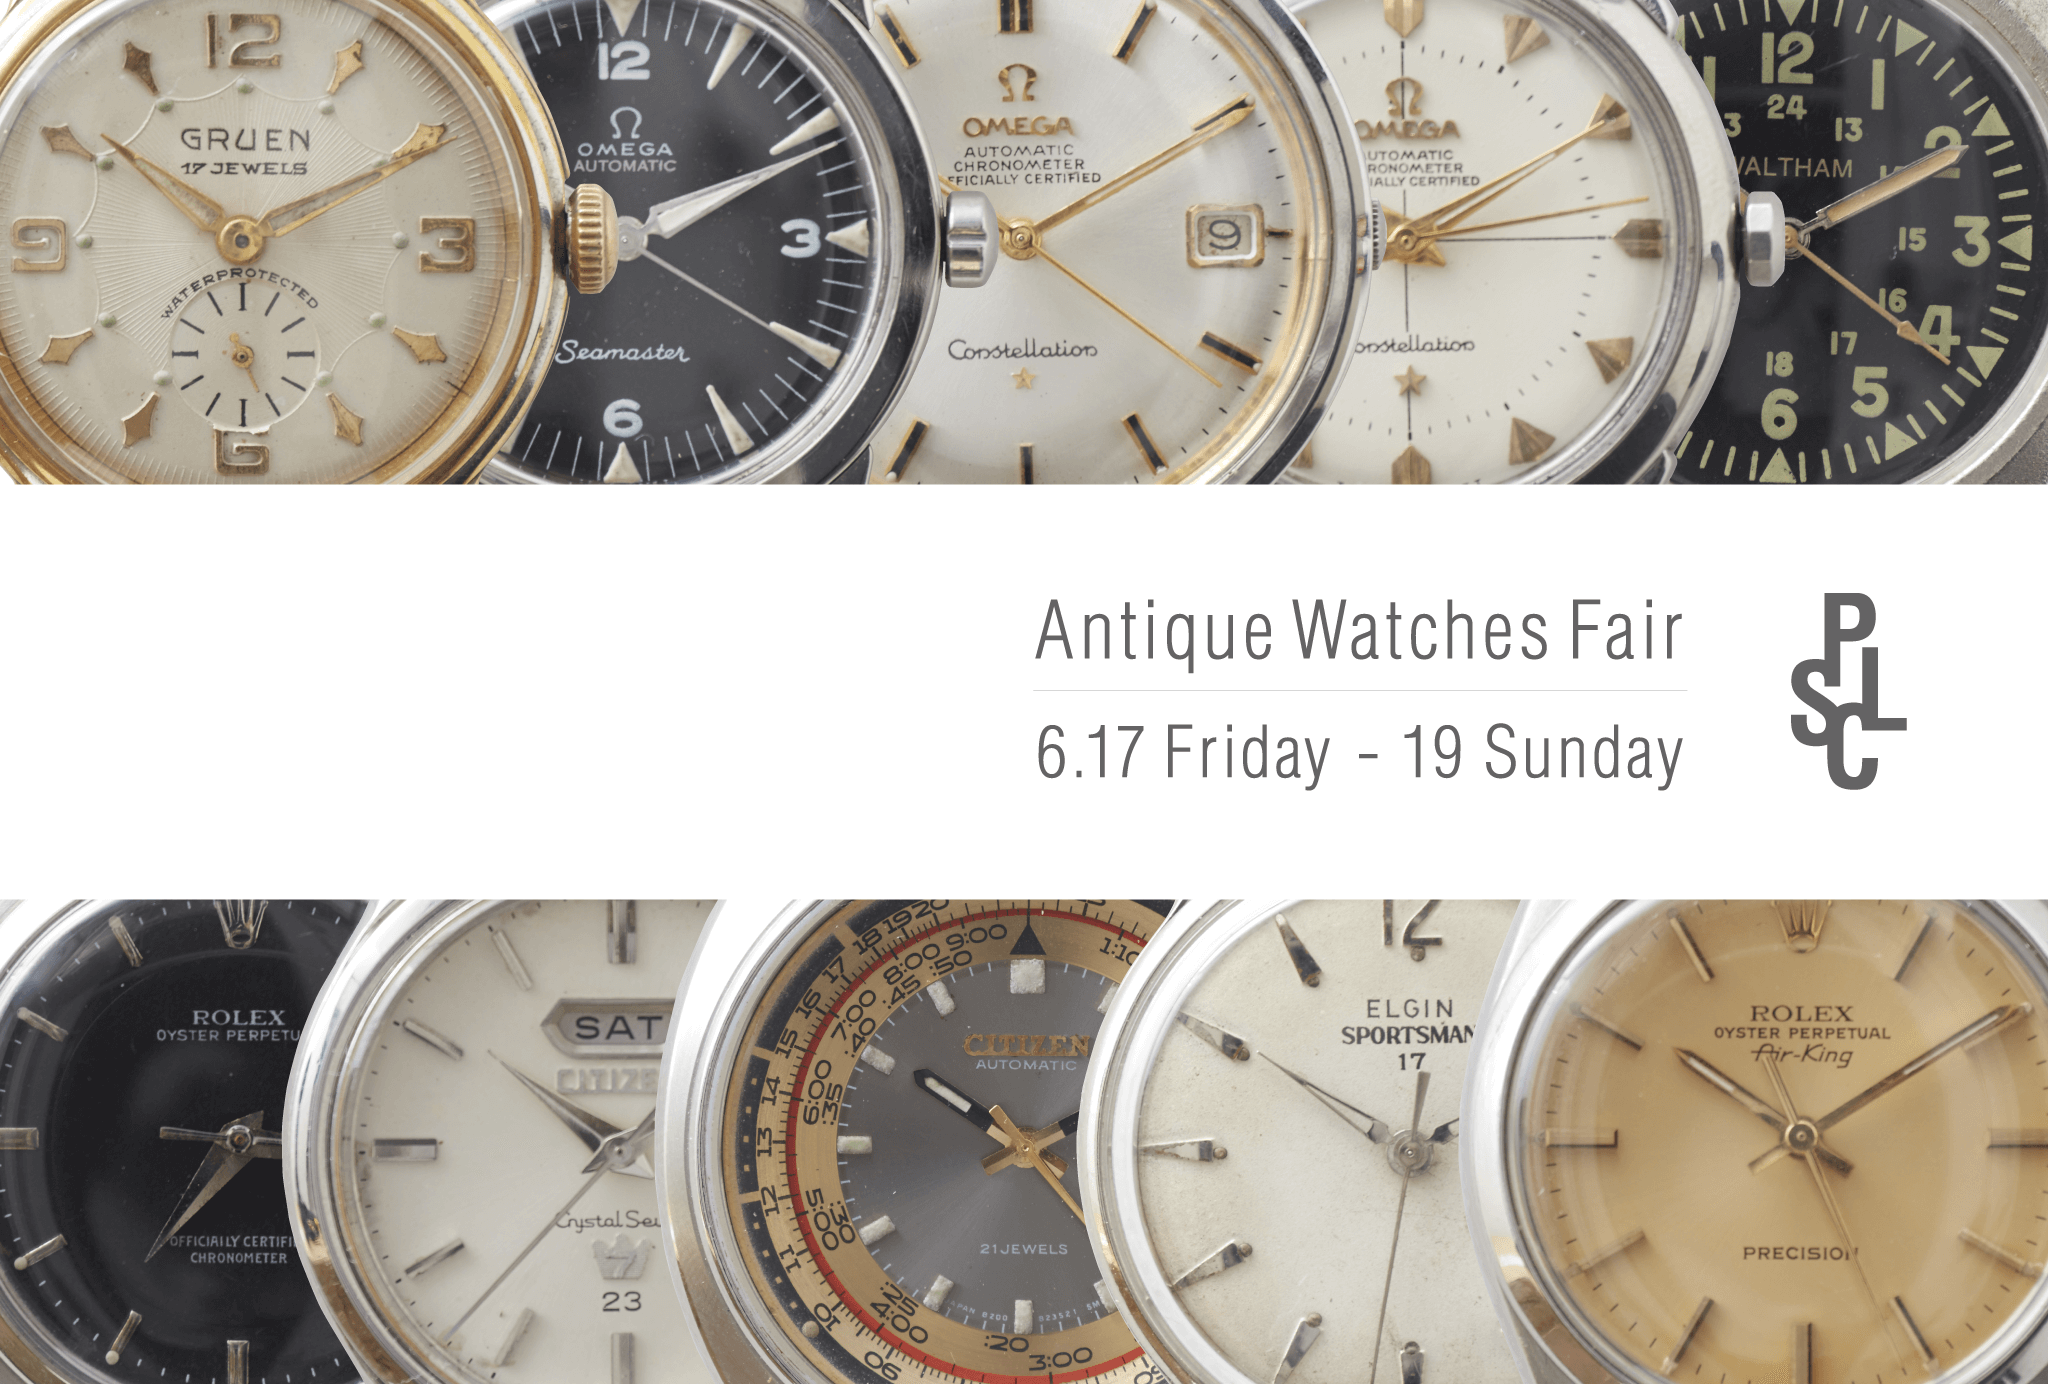 Antique Watches Fair